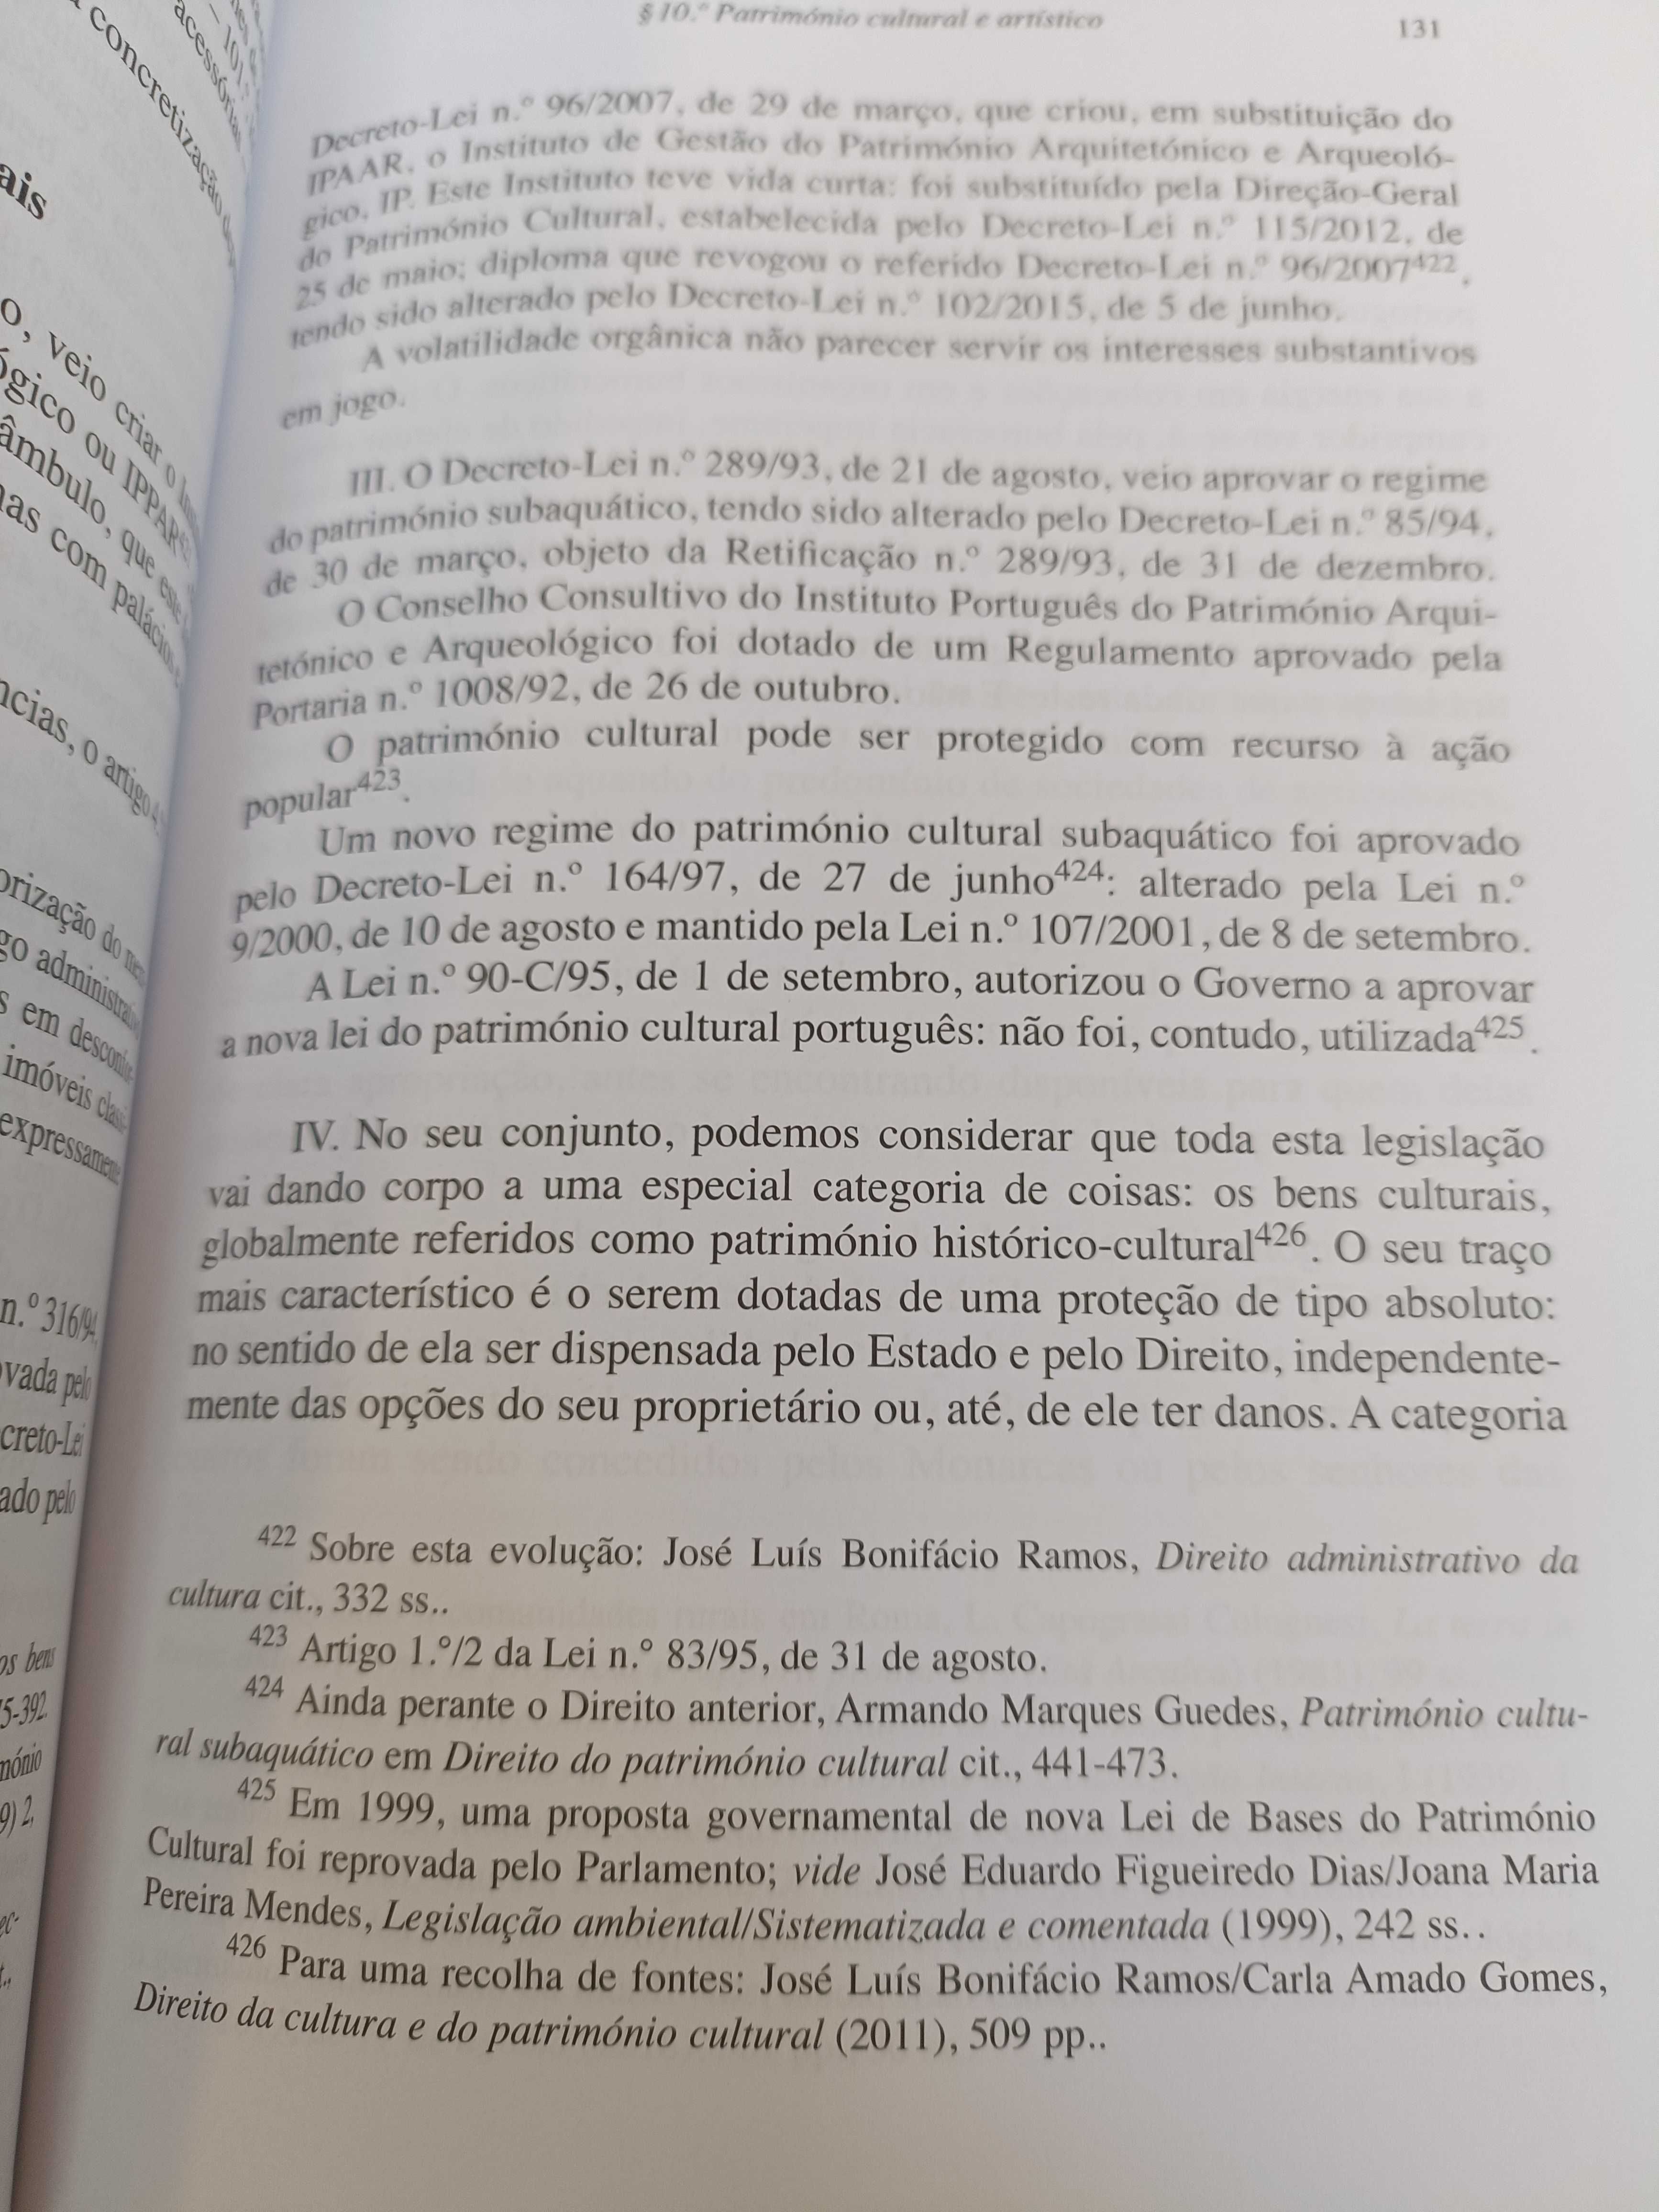 Livro Tratado de Direito Civil III - Antonio Menezes Cordeiro